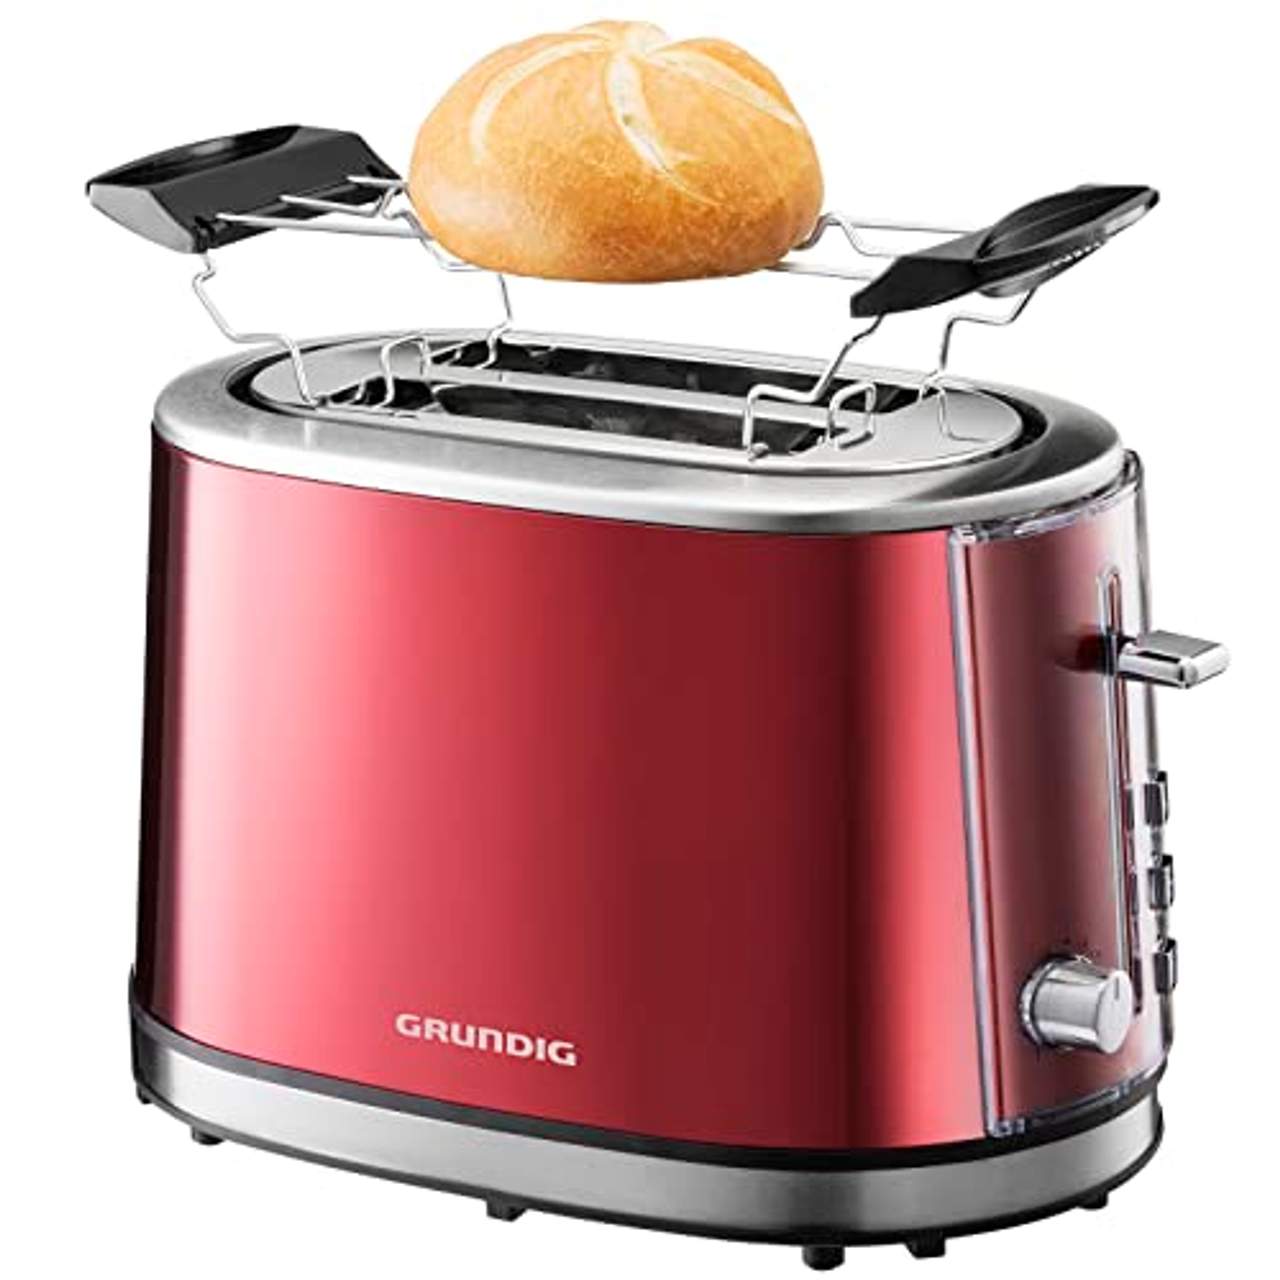 Grundig TA 6330 Toaster Red Sense